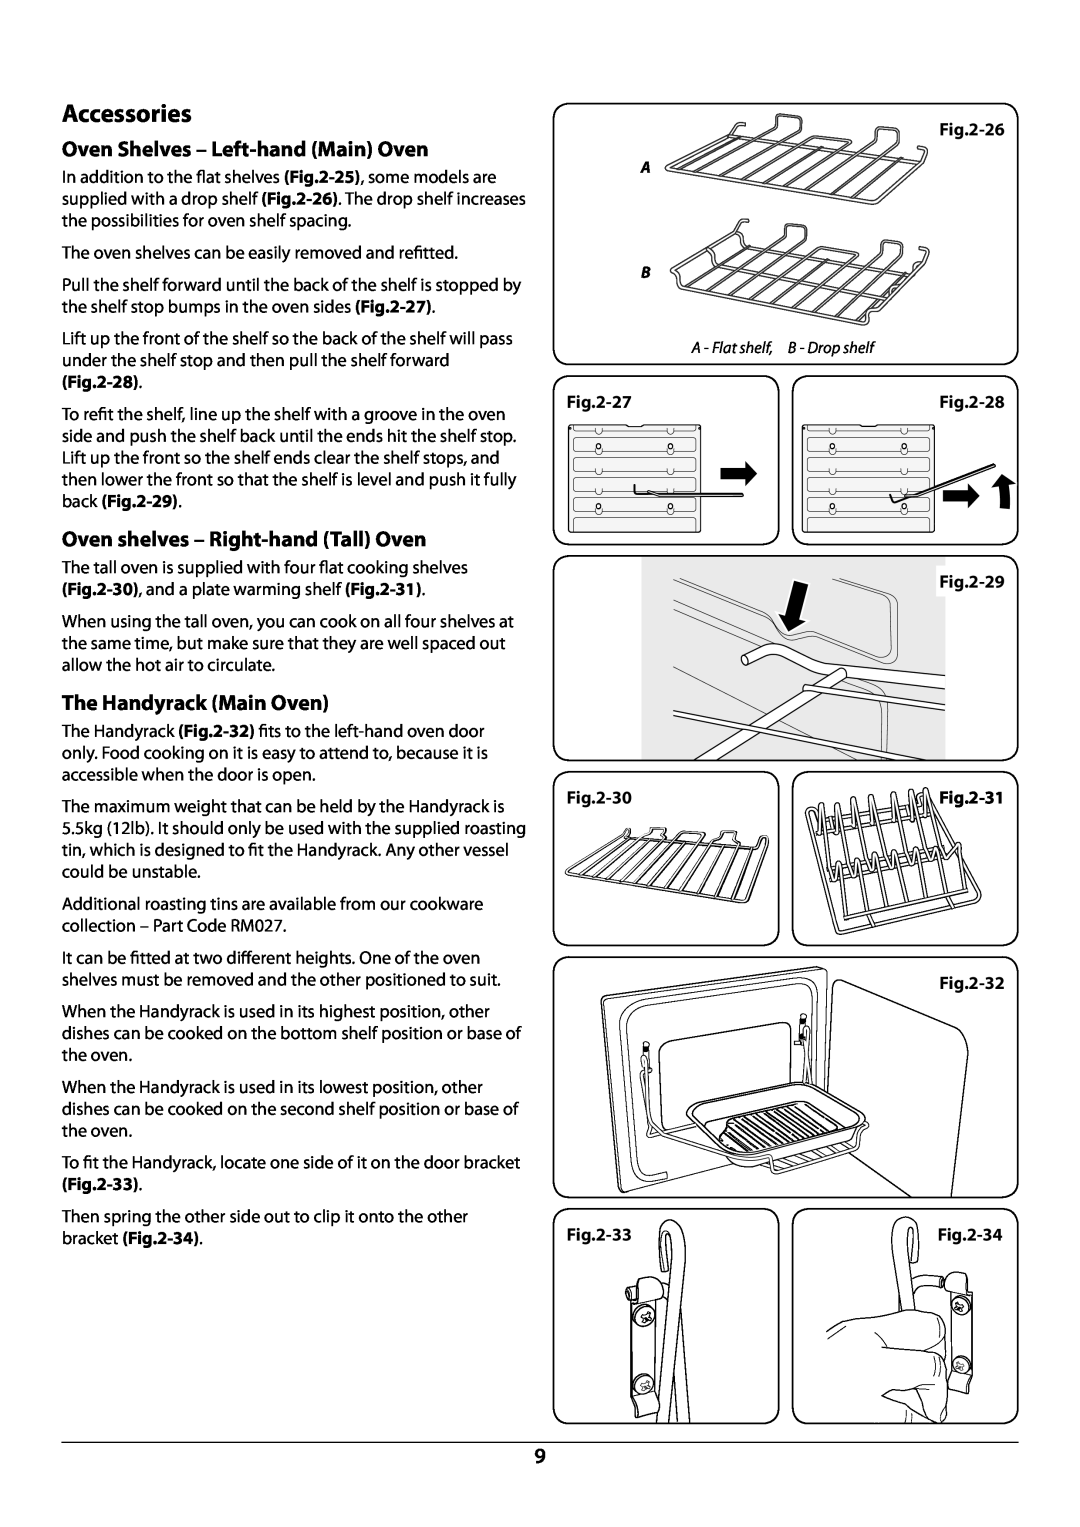 Rangemaster U109976 - 02 Accessories, Oven Shelves - Left-hand Main Oven, Oven shelves - Right-hand Tall Oven, 26, 27, 29 